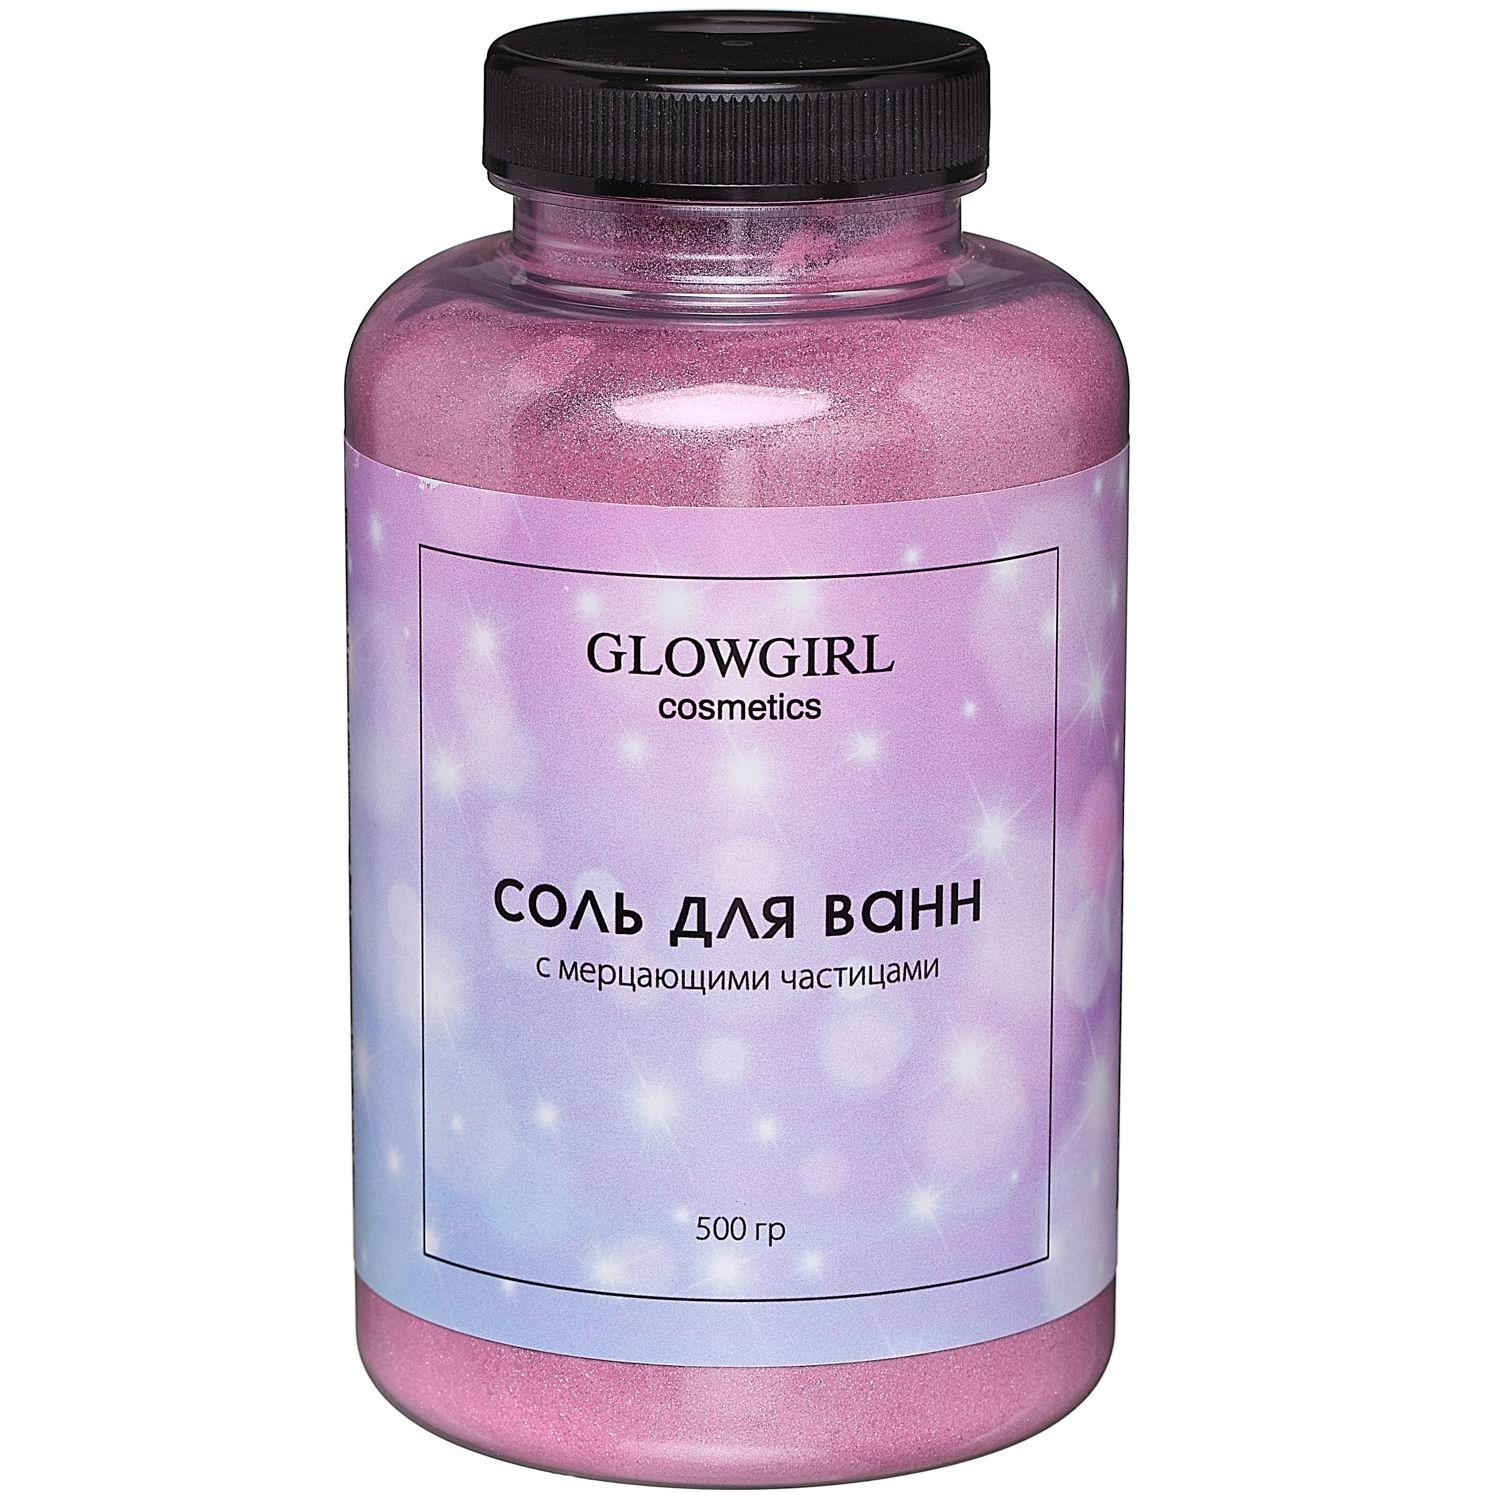 Соль для ванн Glowgirl розовый гранат 500г соль для ванн рецепты красоты для похудения 500г